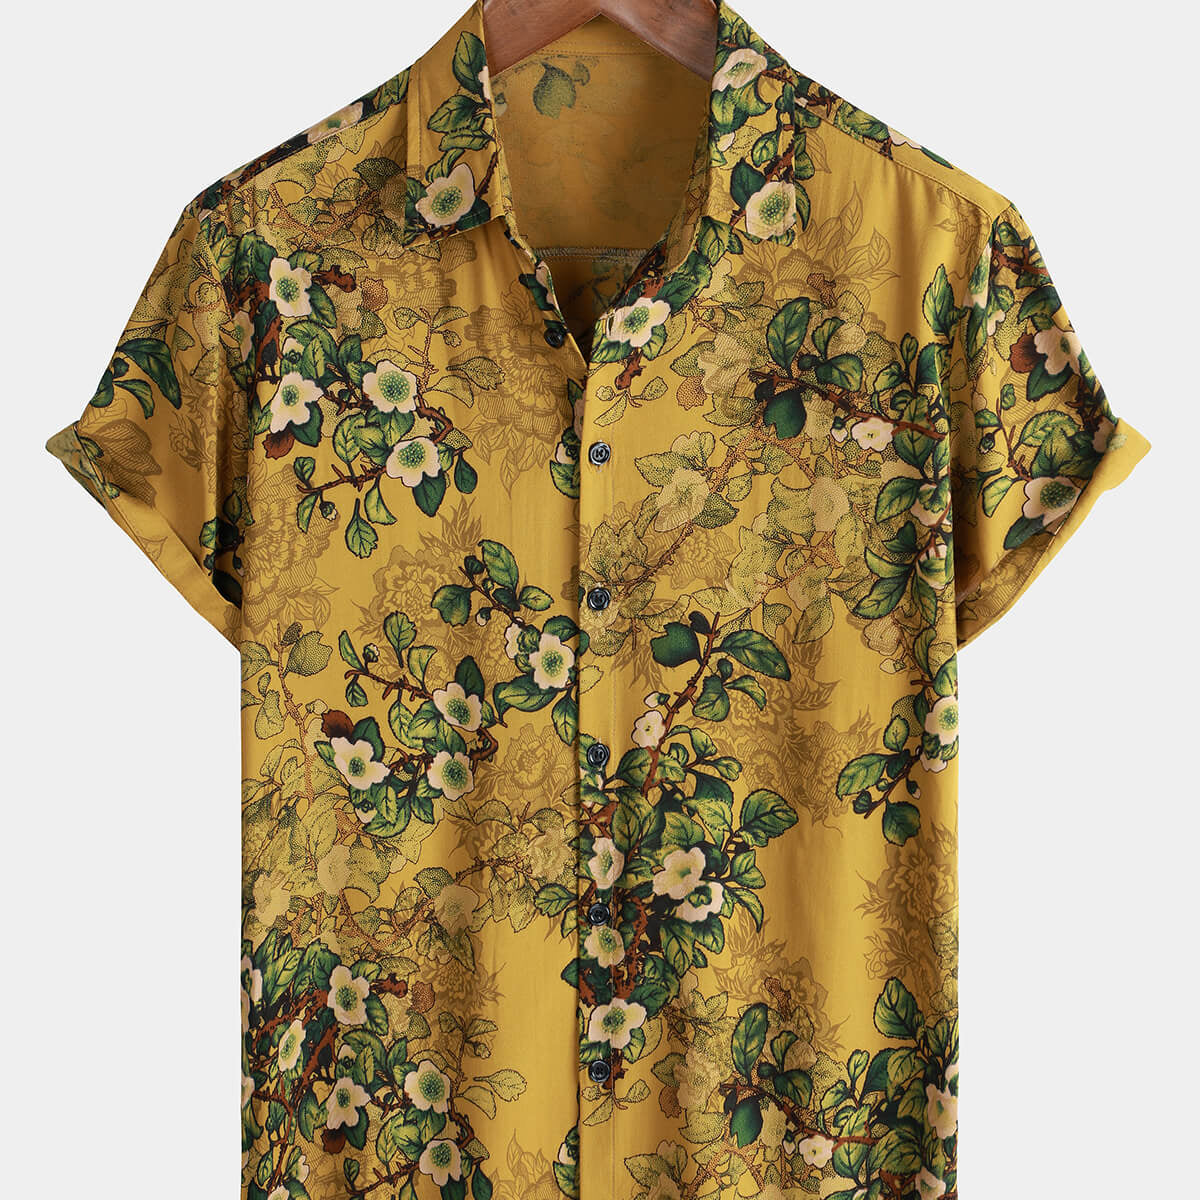 Chemise boutonnée à manches courtes pour hommes, Vintage, décontractée, en rayonne, douce, florale, manches courtes